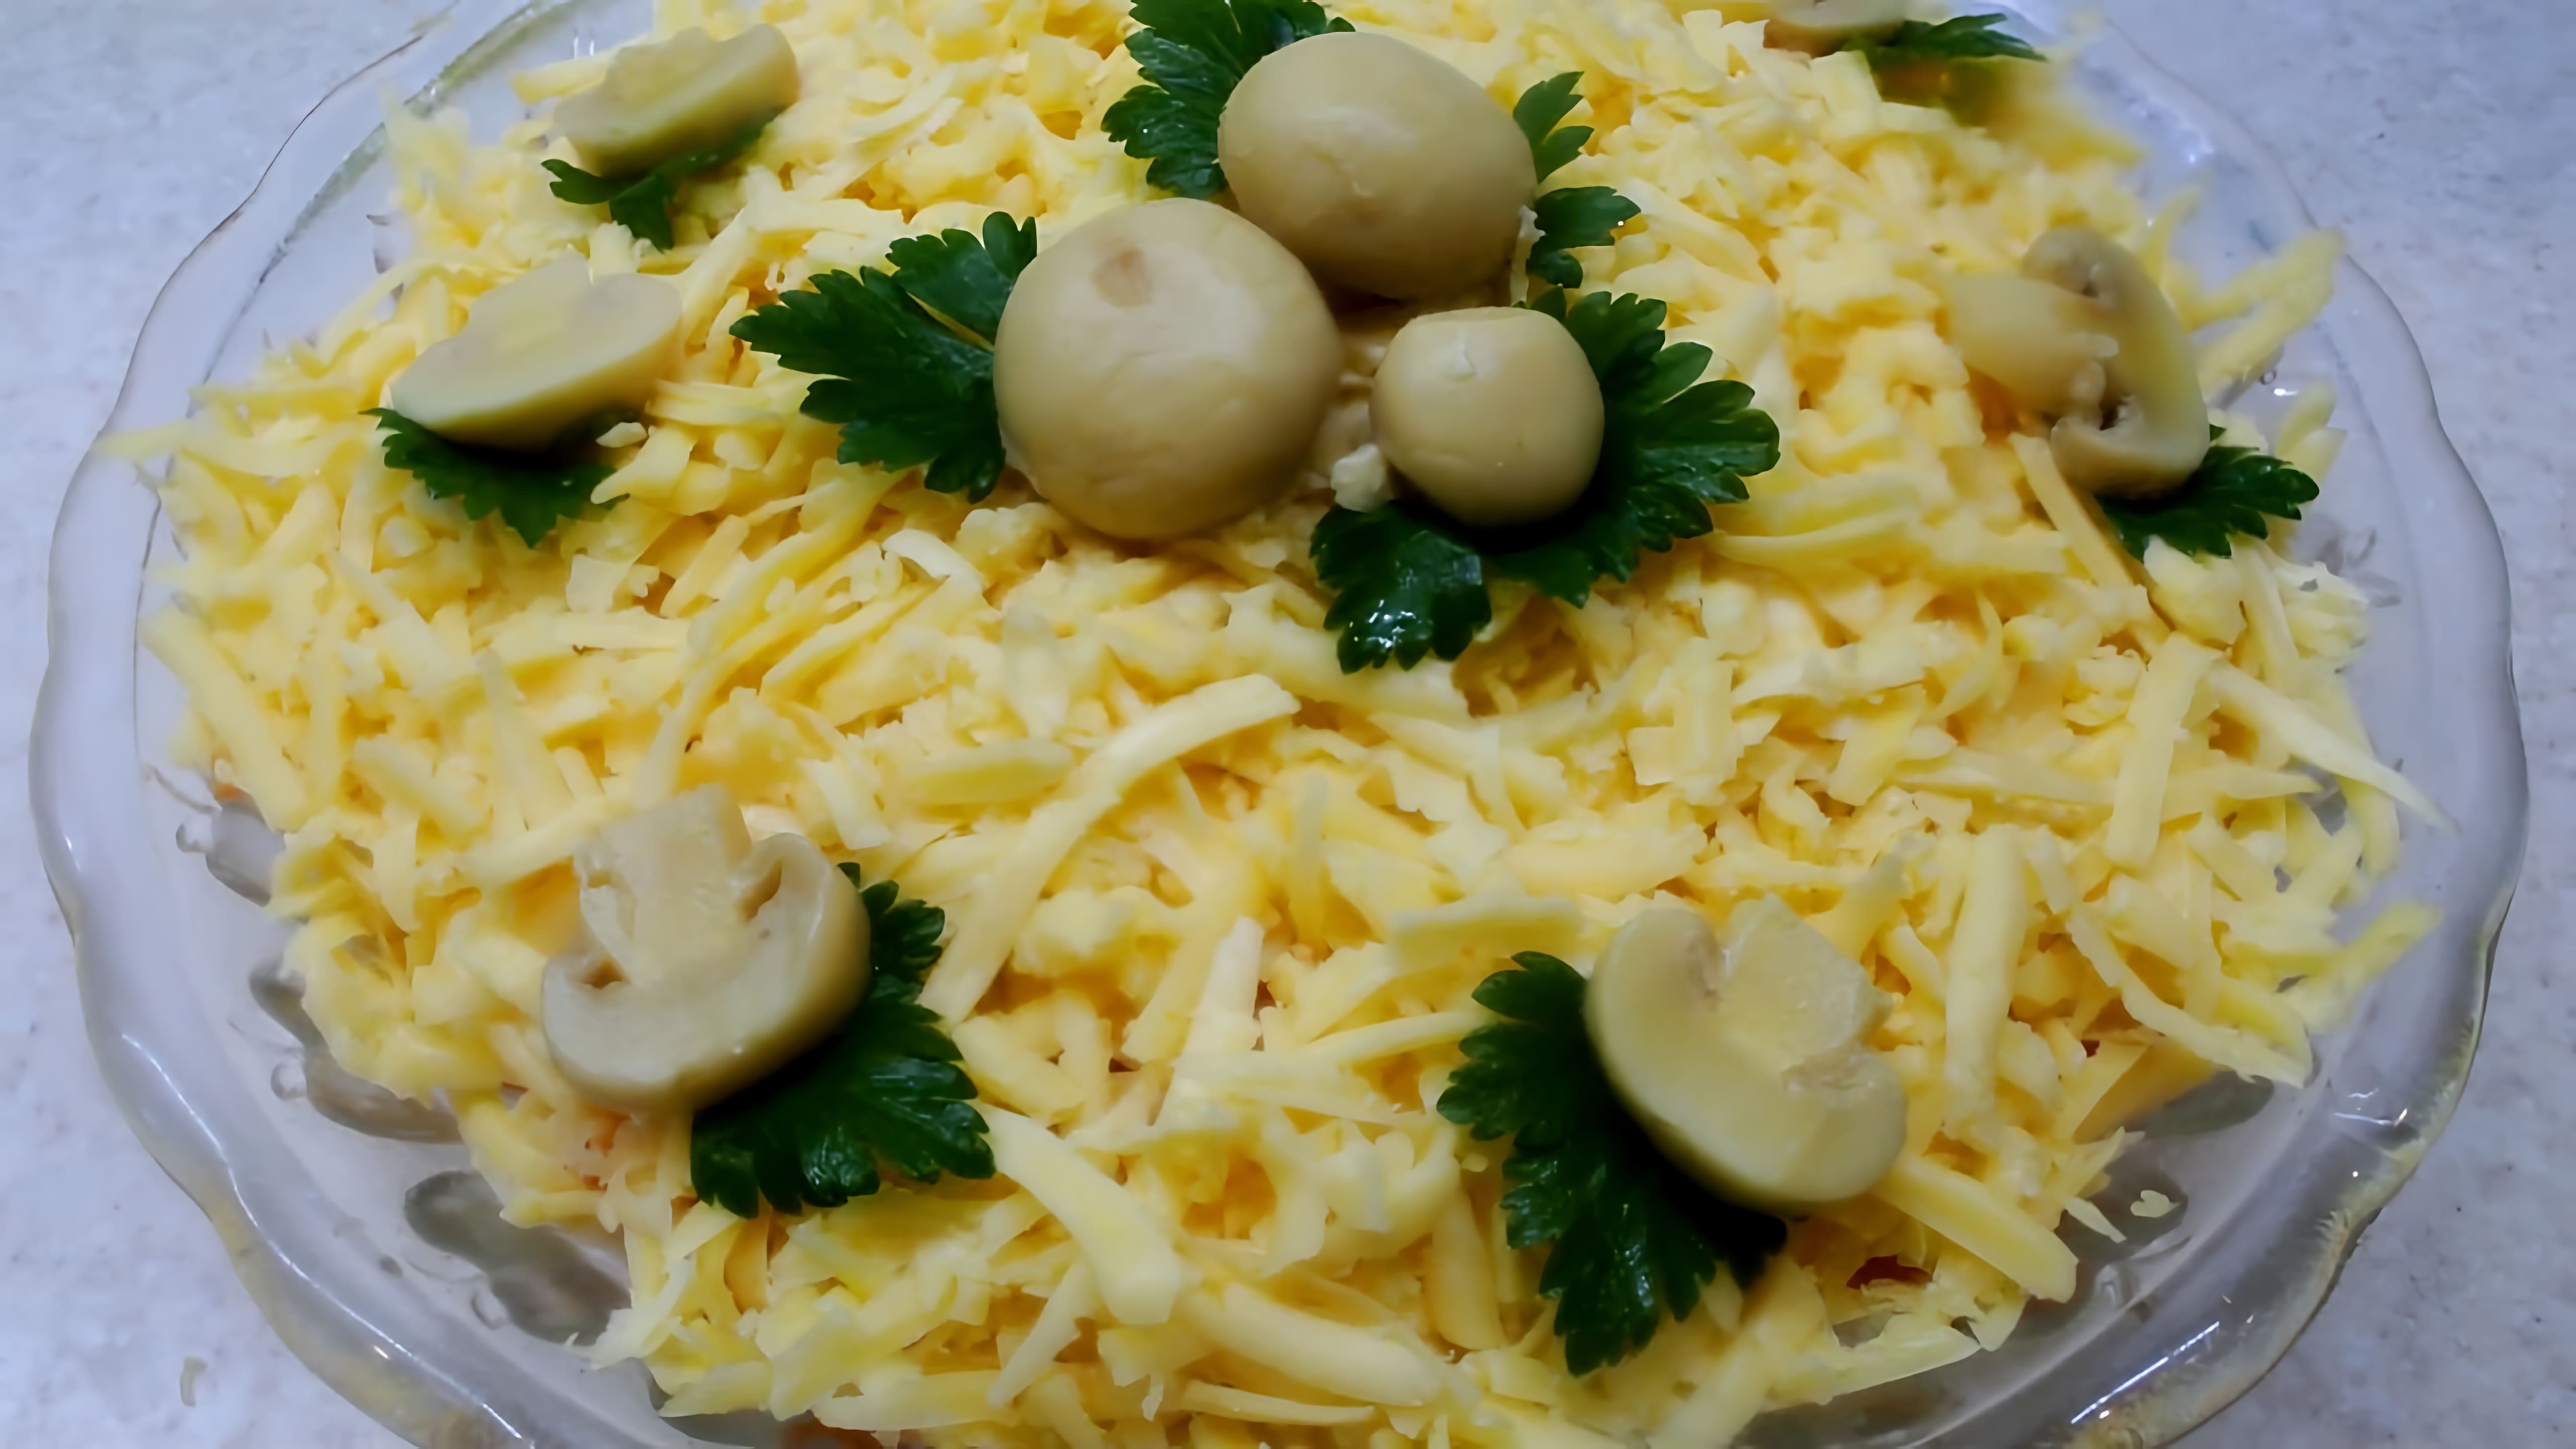 Салат "Русская красавица" - это вкусное и яркое блюдо, которое можно приготовить на любой праздник